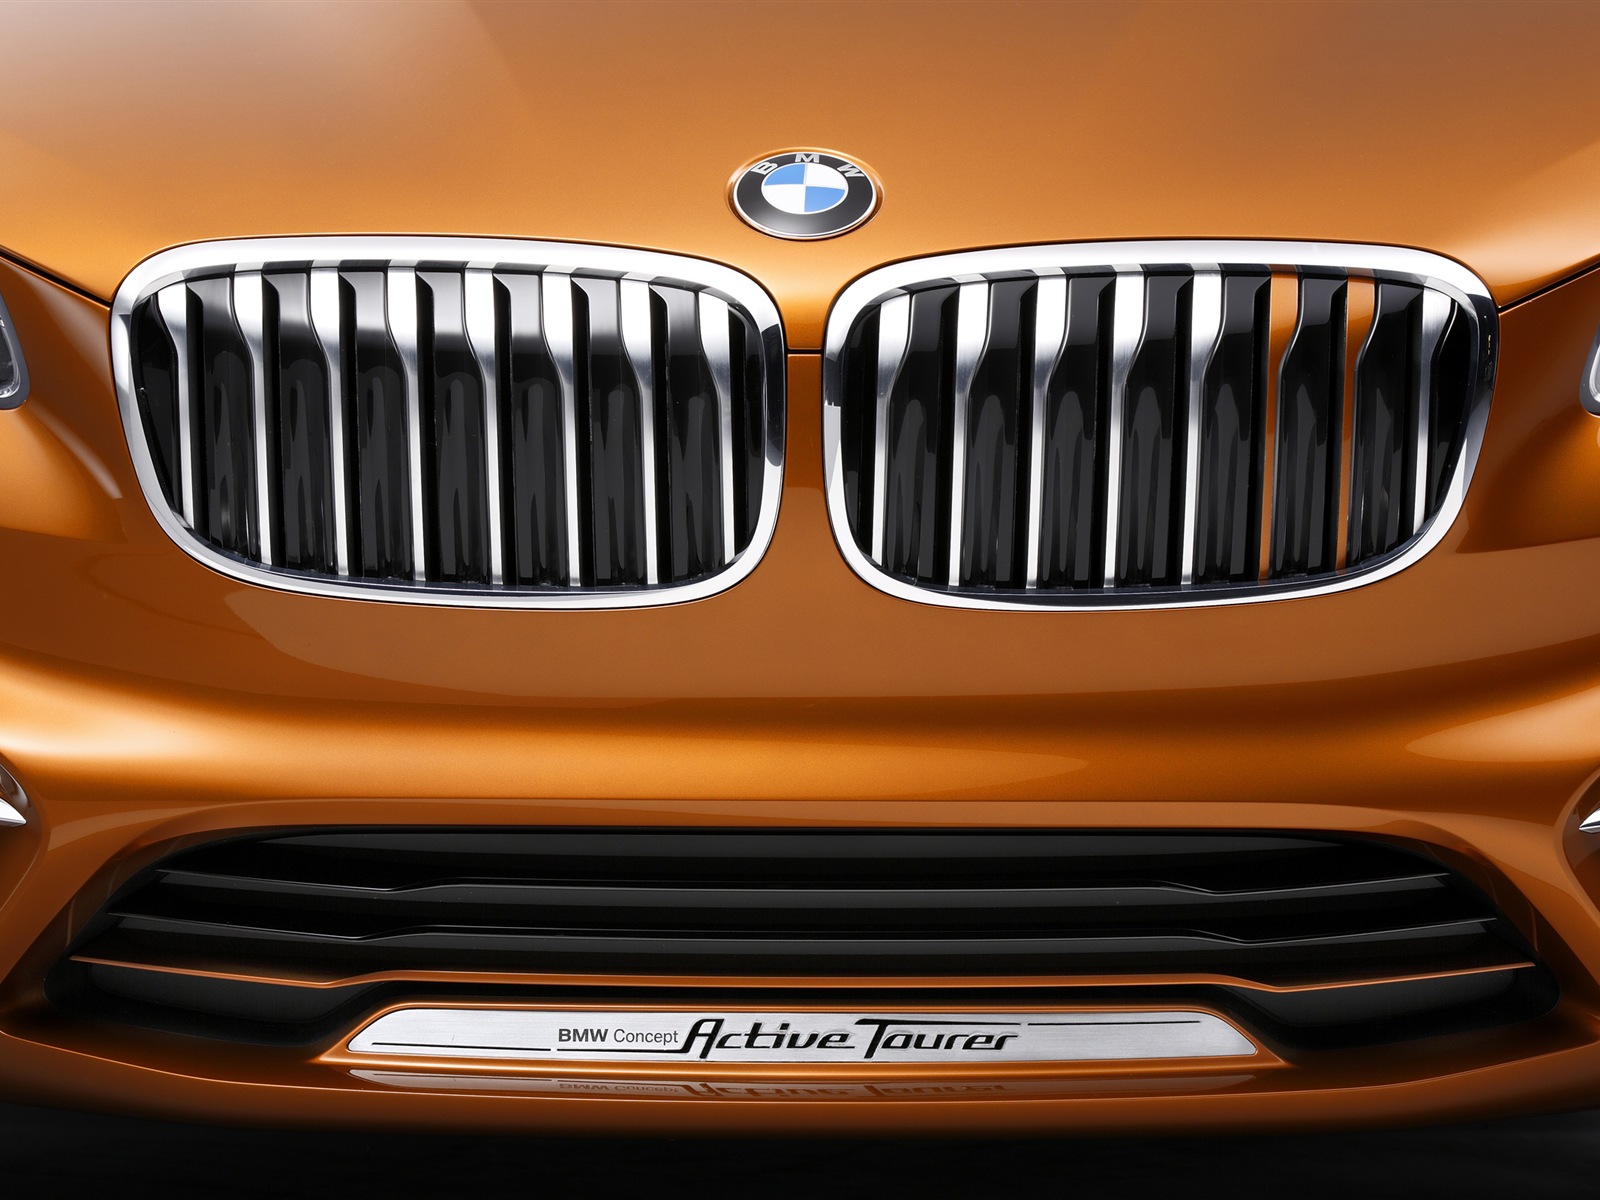 2013 BMW Concept Aktive Tourer HD Wallpaper #15 - 1600x1200